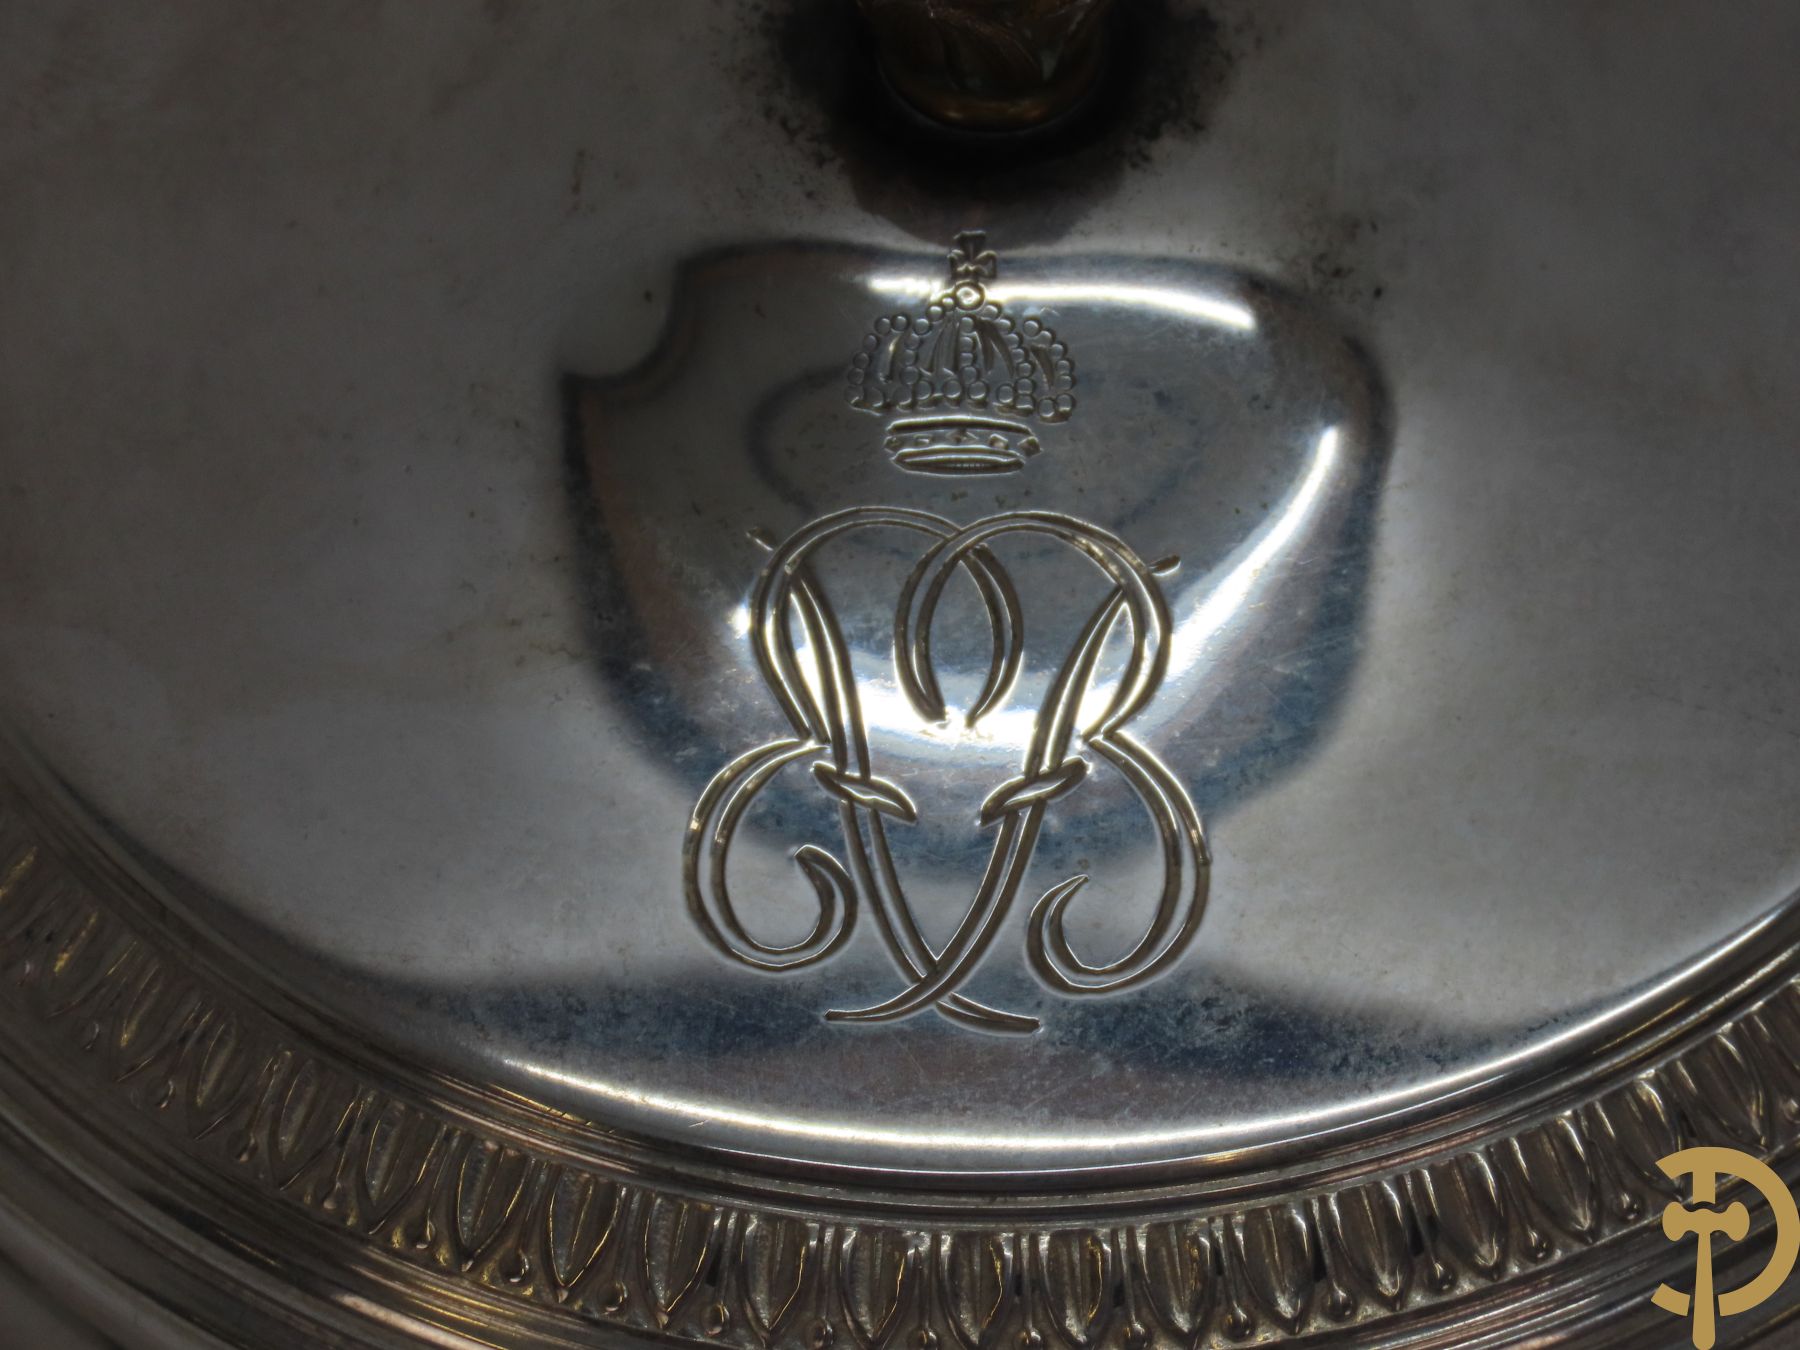 Massief zilveren bonbonnière met gekroonde initialen EVB (Elisabeth Van Beieren?)